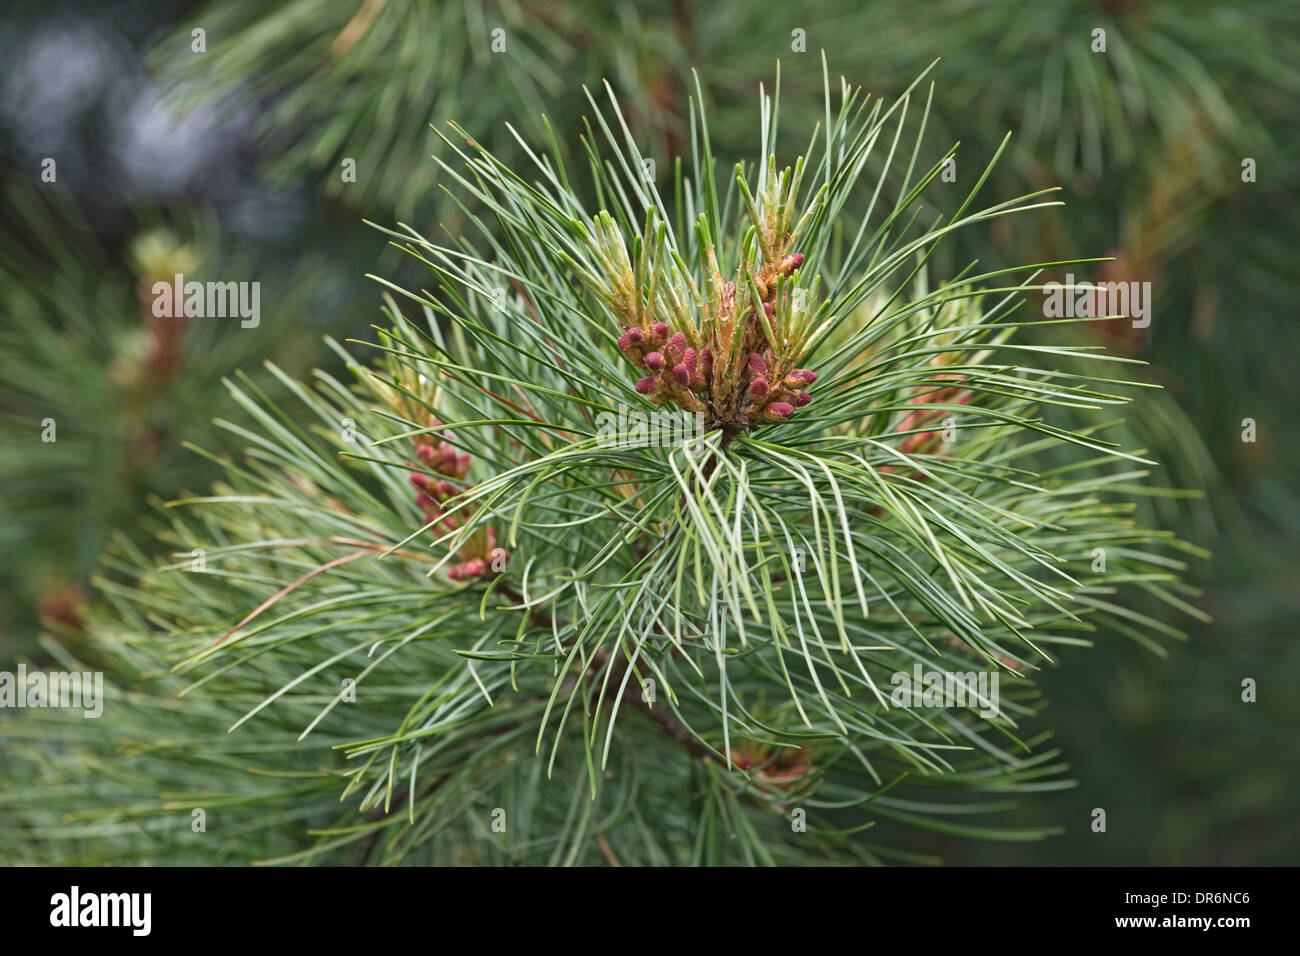 Korean, or Manchurian pine (Pinus koraiensis) Stock Photo